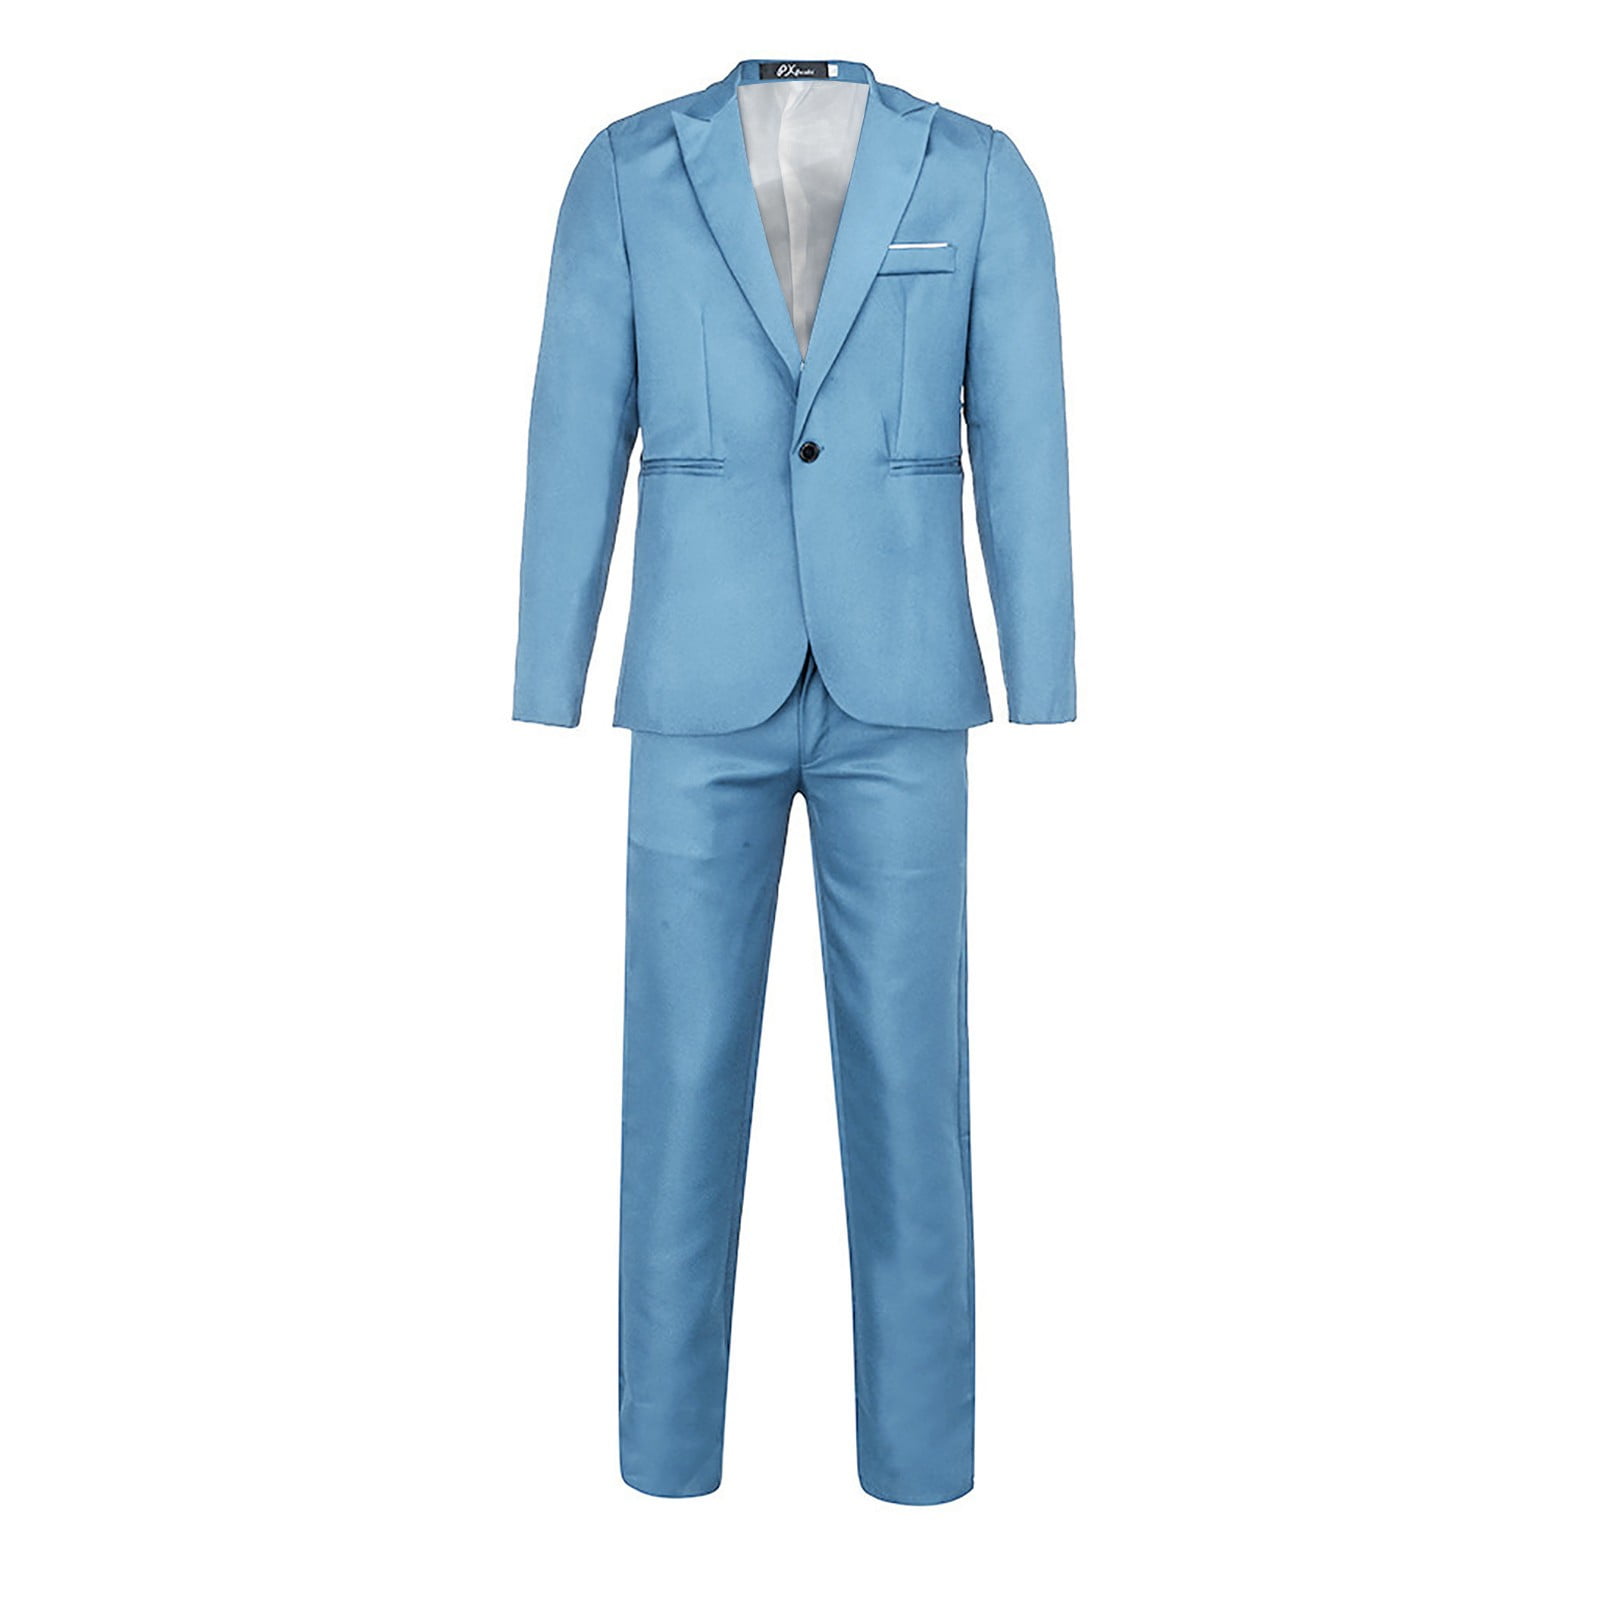 Share 171+ light blue suit combination best